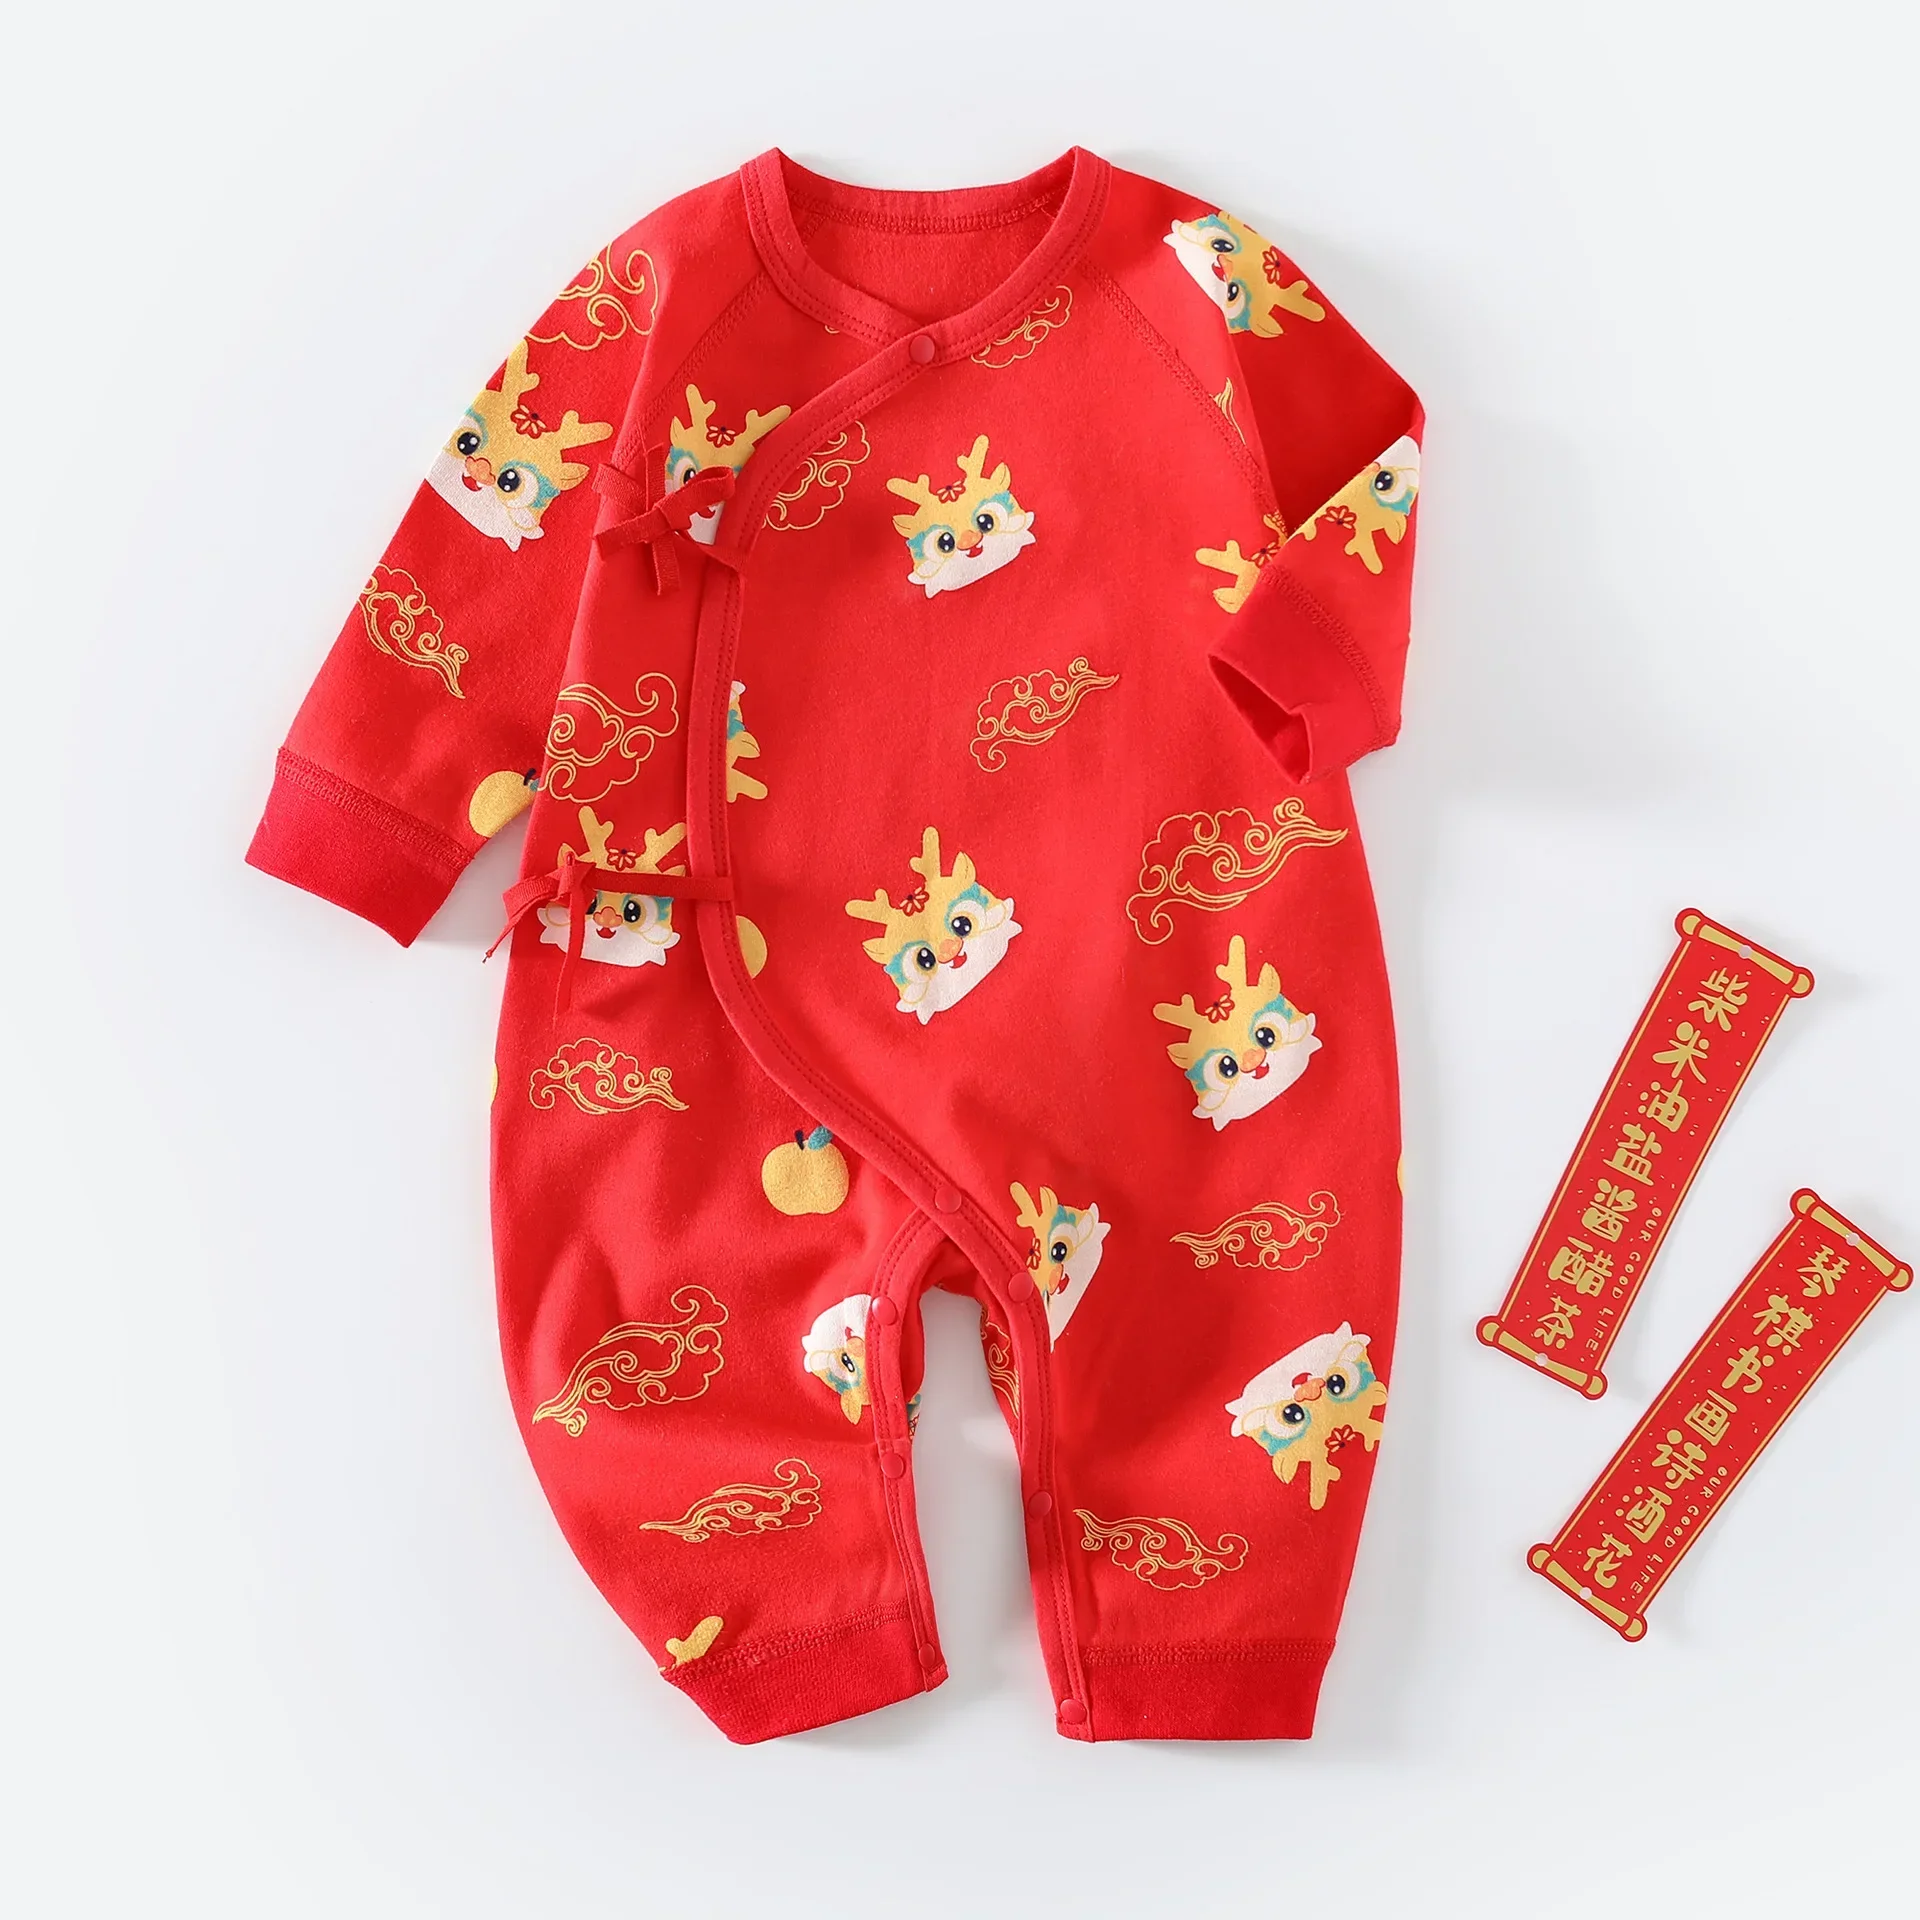 Детская одежда из красного хлопка, Китайский Новый год, День рождения на целый месяц, Осенний комбинезон для новорожденных, пижама, костюм 